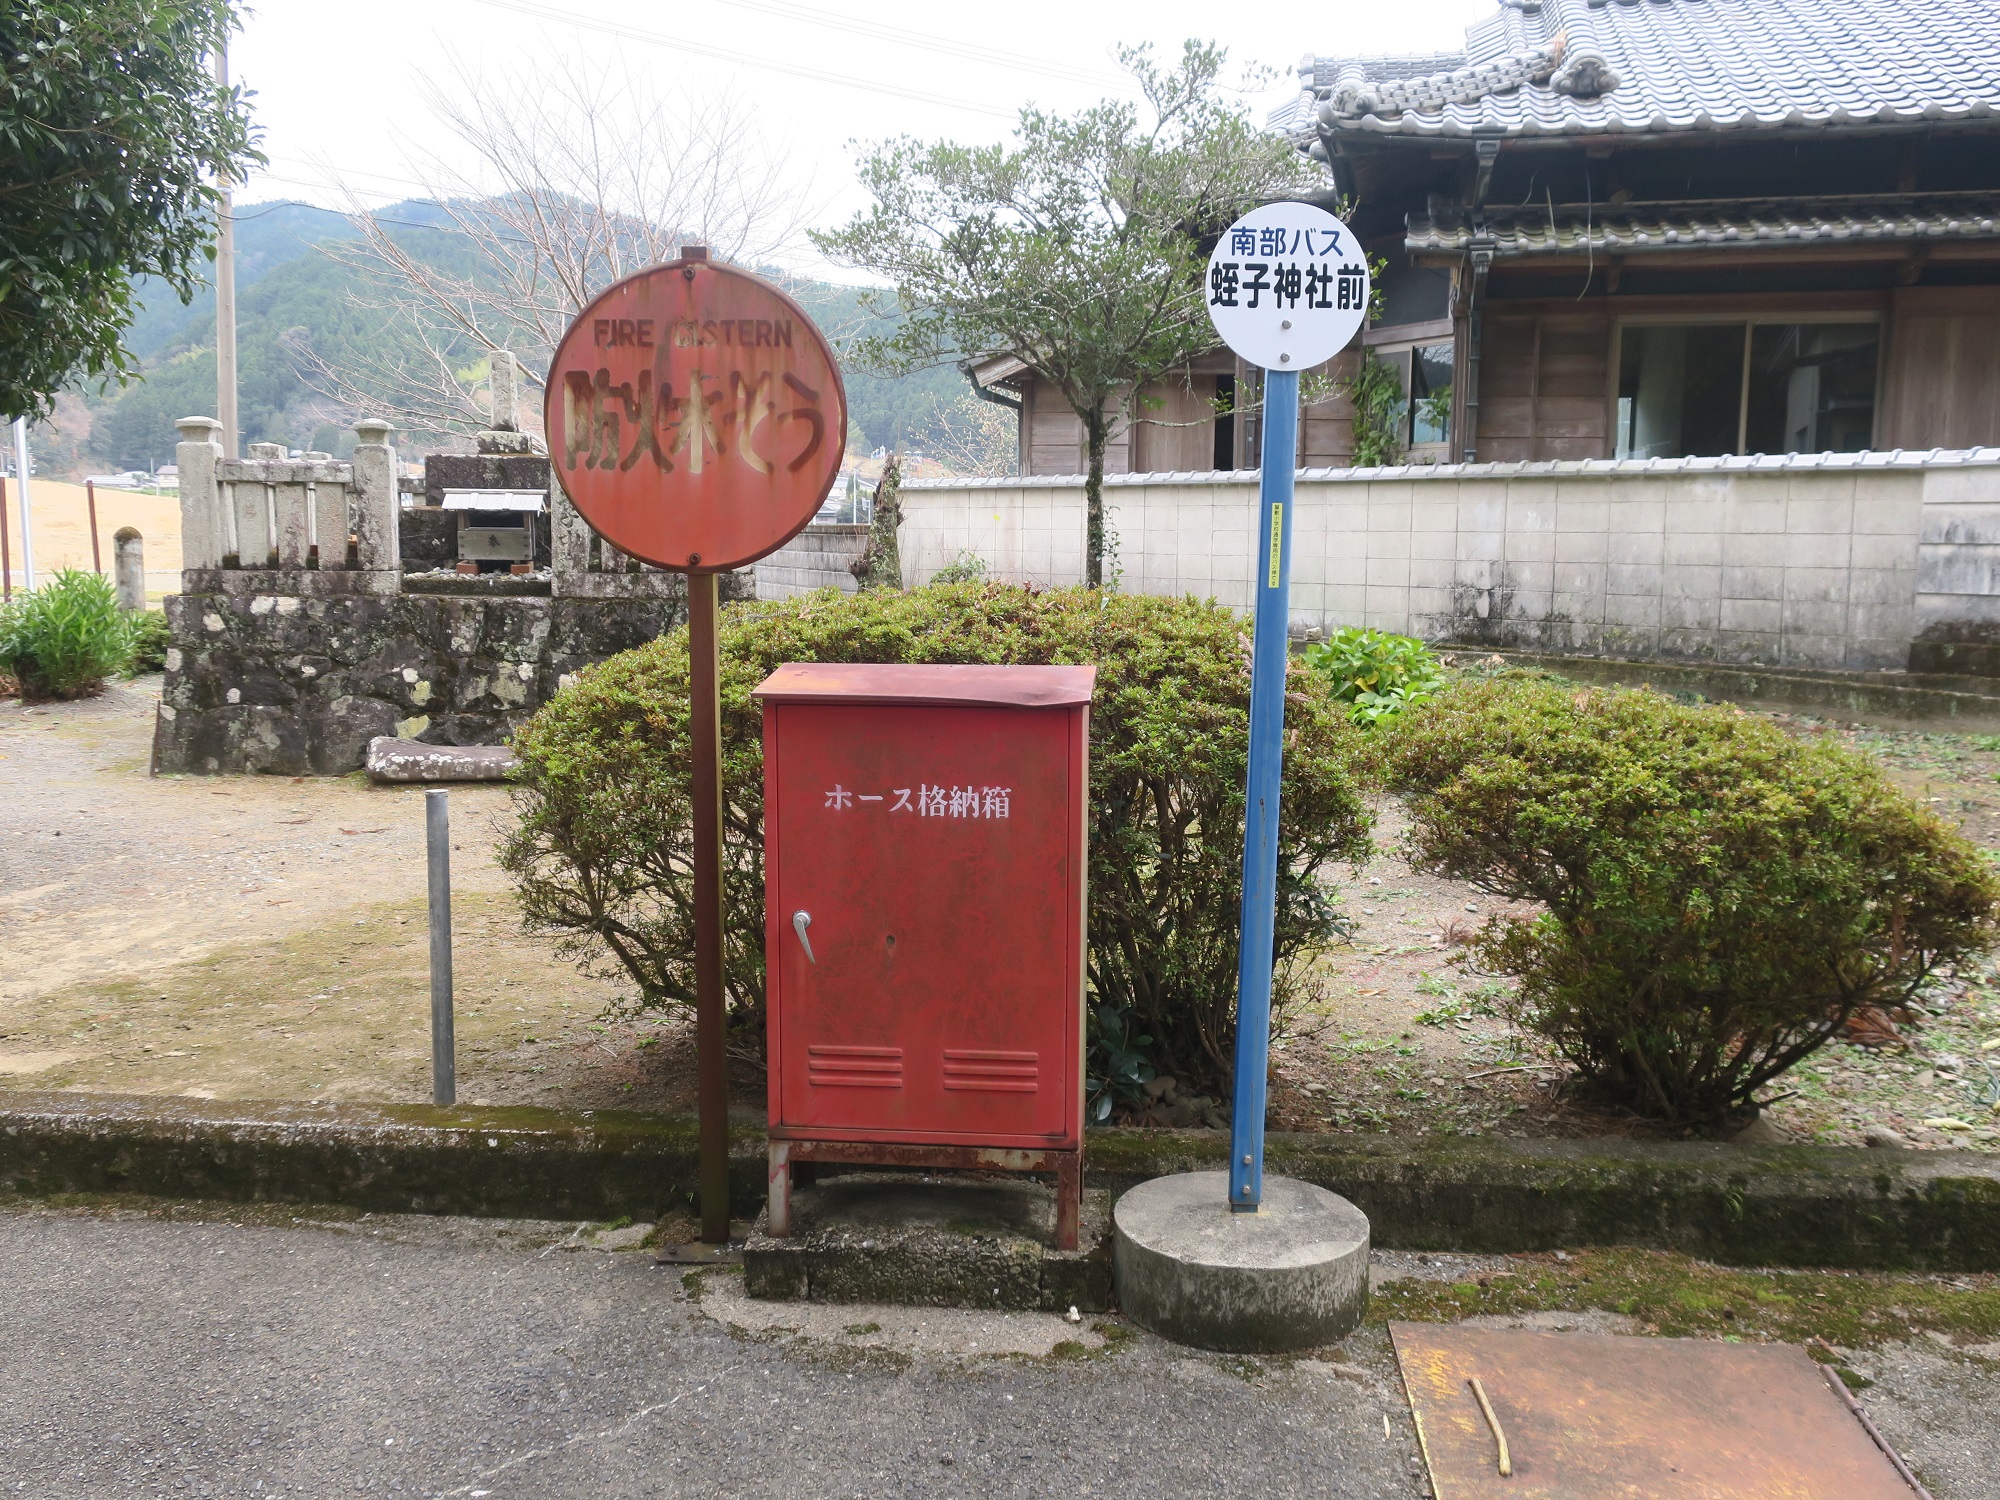 南部バス 蛭子神社前バス停 バス停 鷲敷小学校への通学専用のバス停です